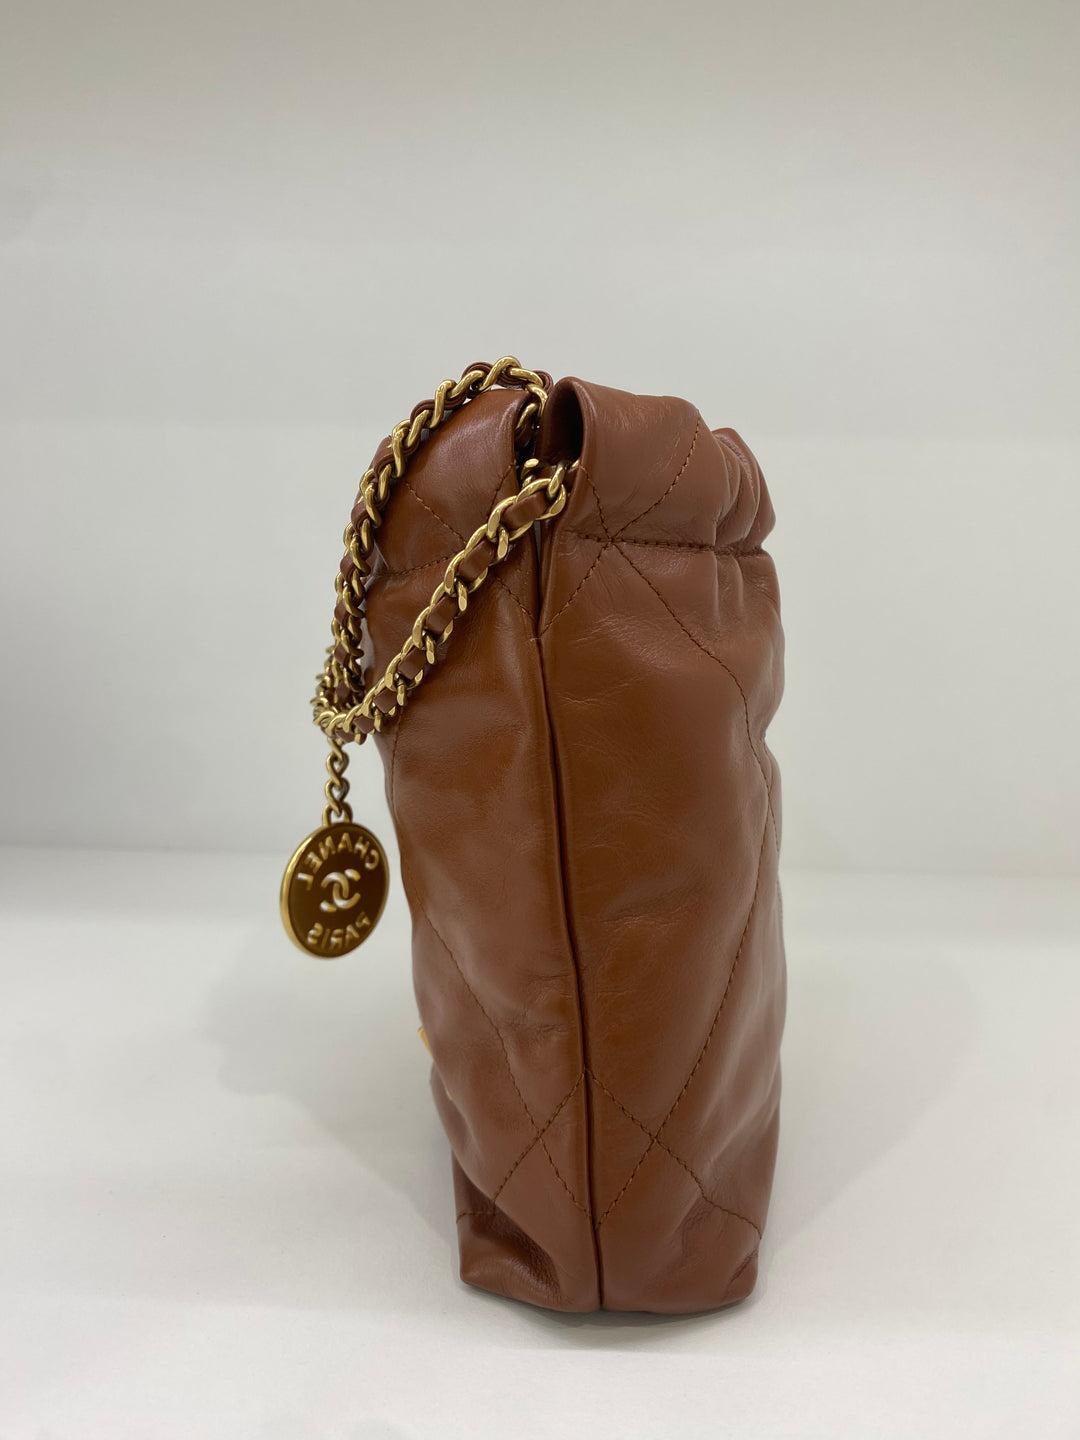 Women's or Men's Chanel 22 Bag Mini - Caramel GHW For Sale